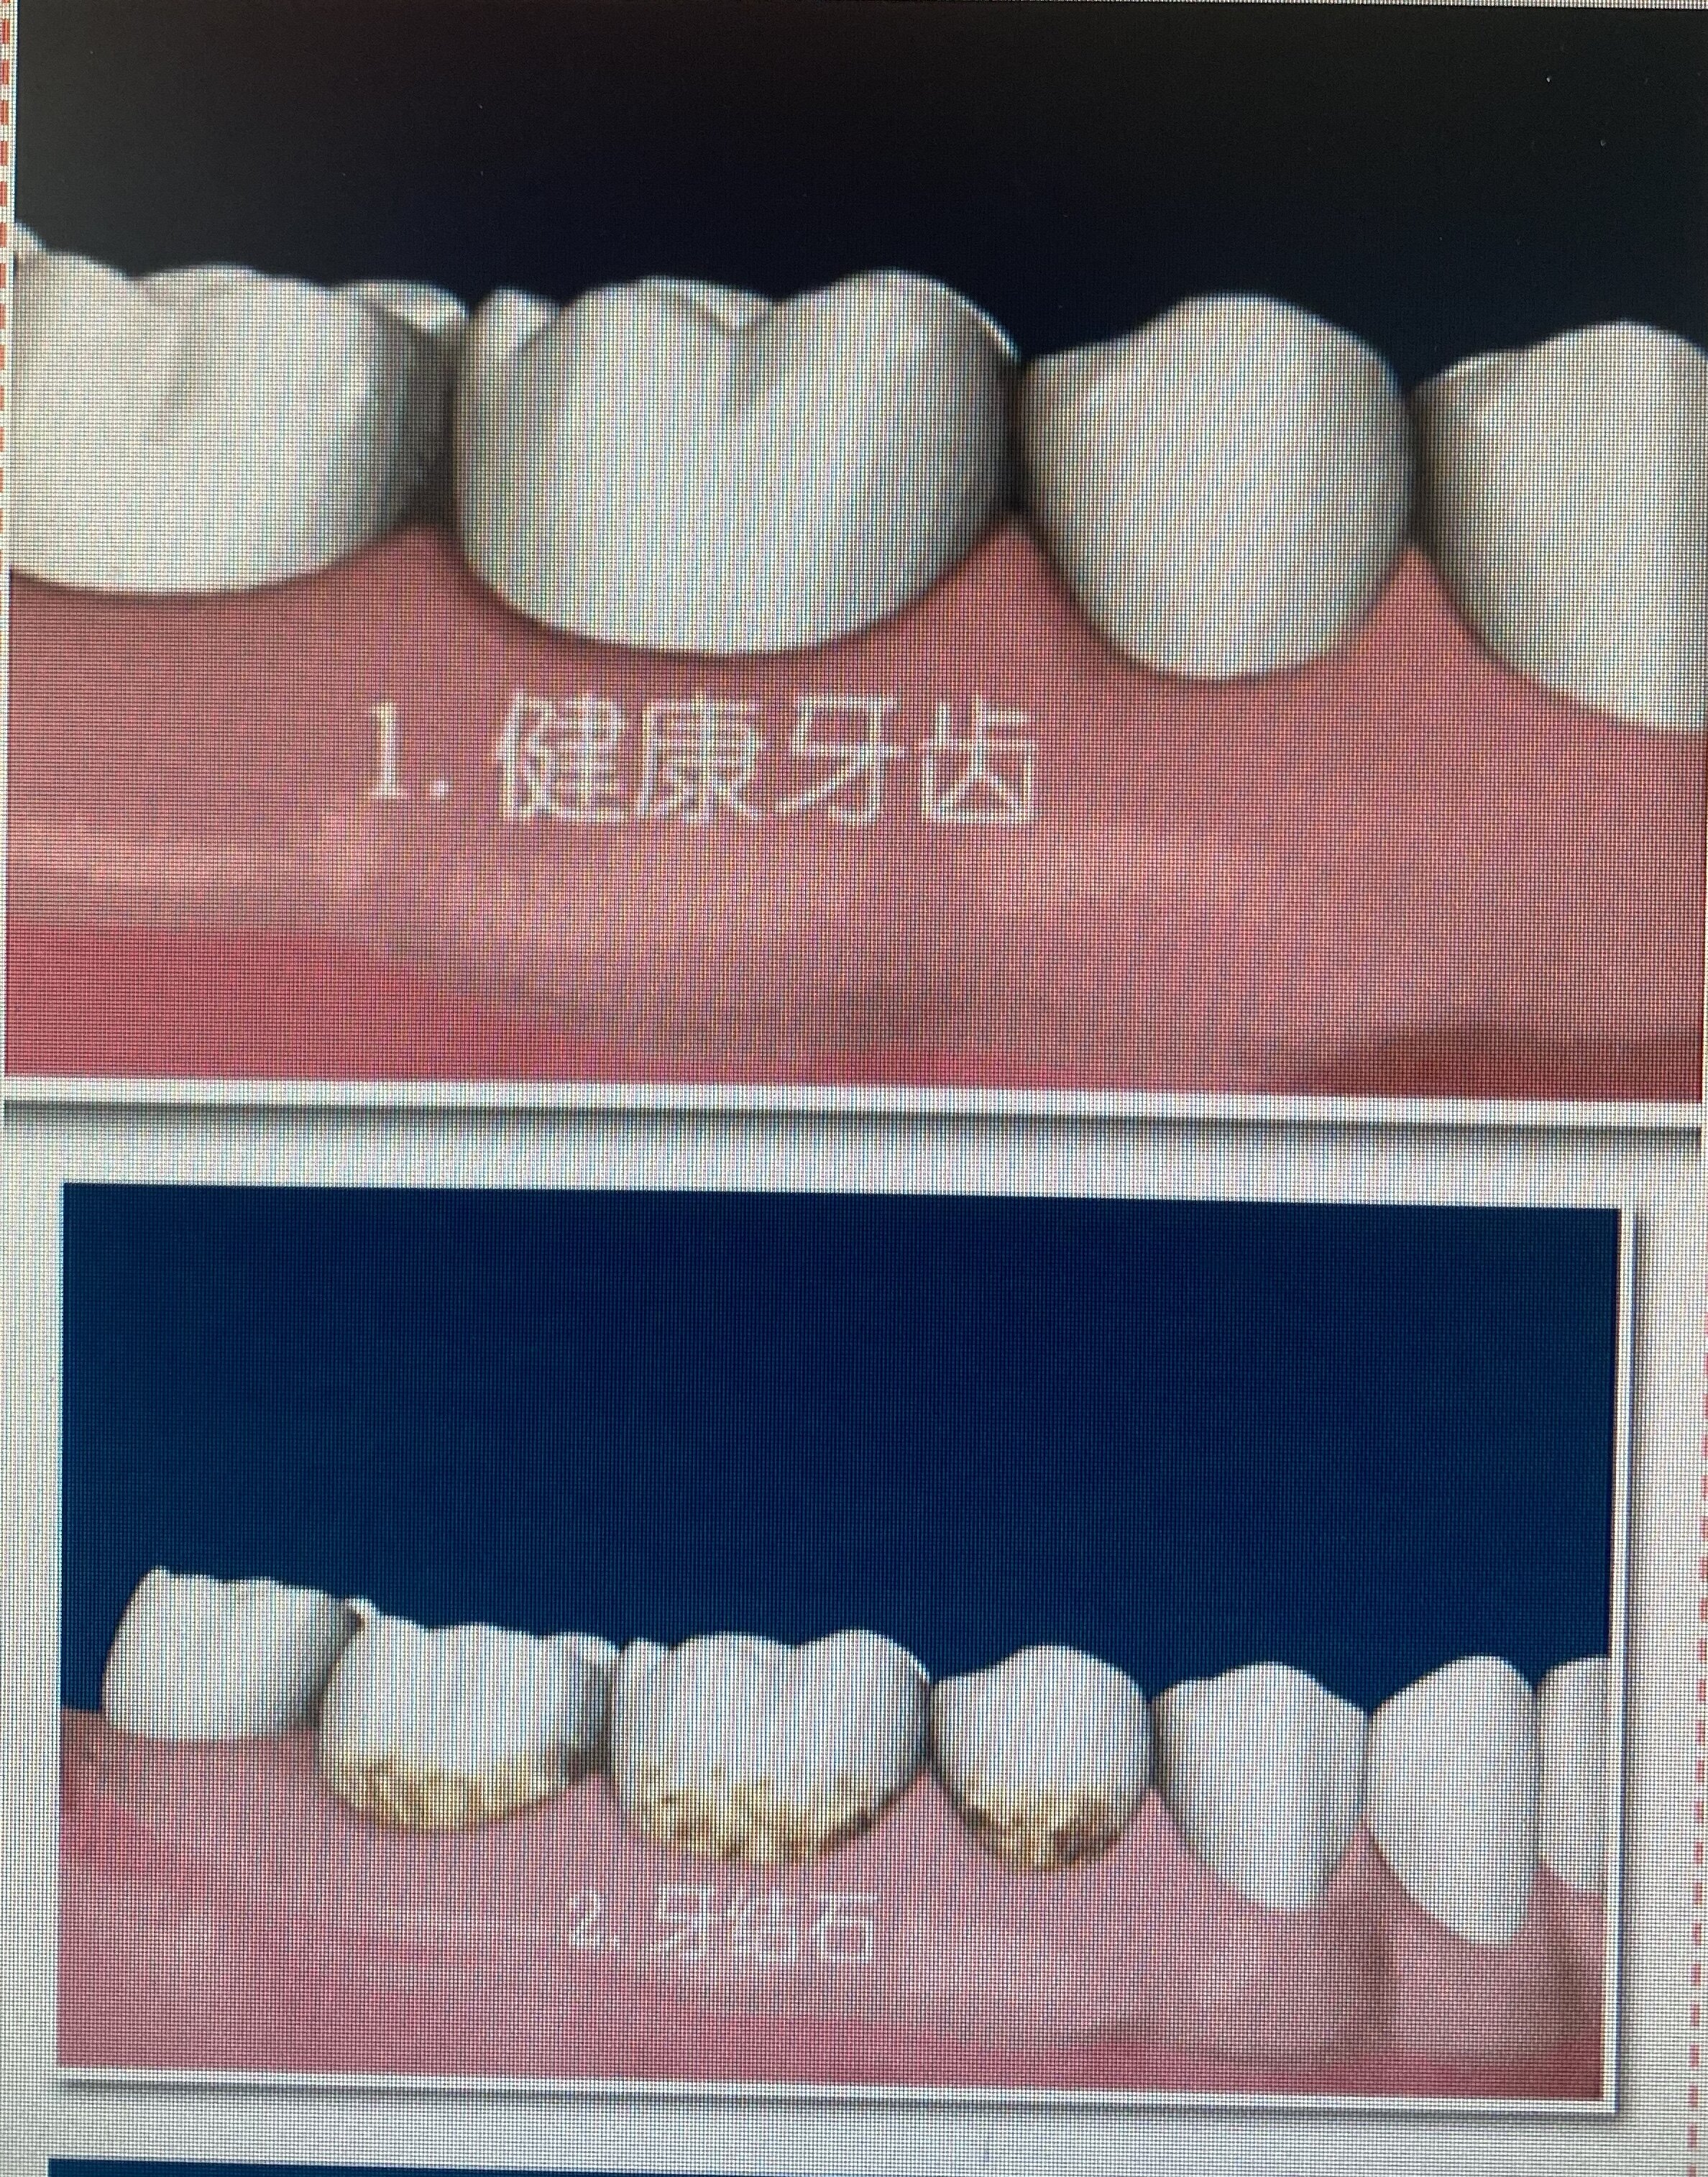 牙龈萎缩程度图片图片